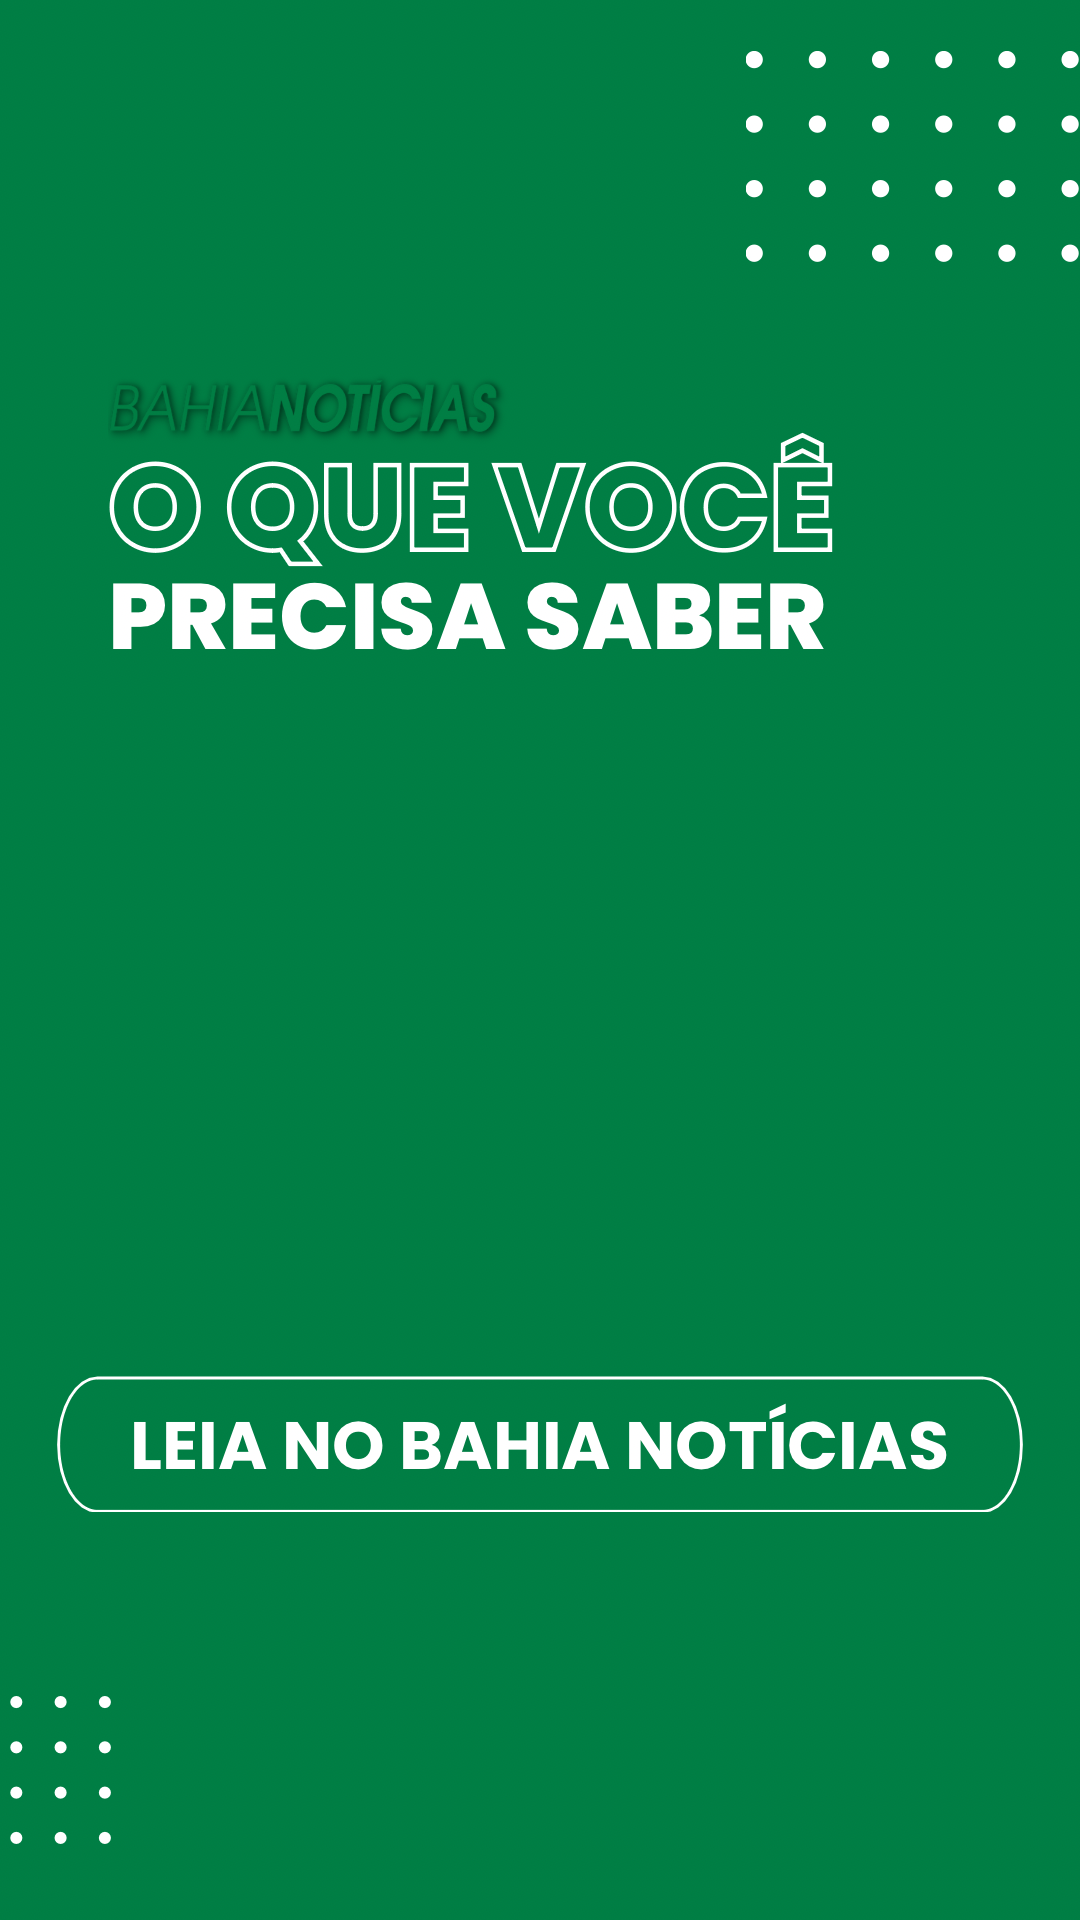 Story do Bahia Notícias